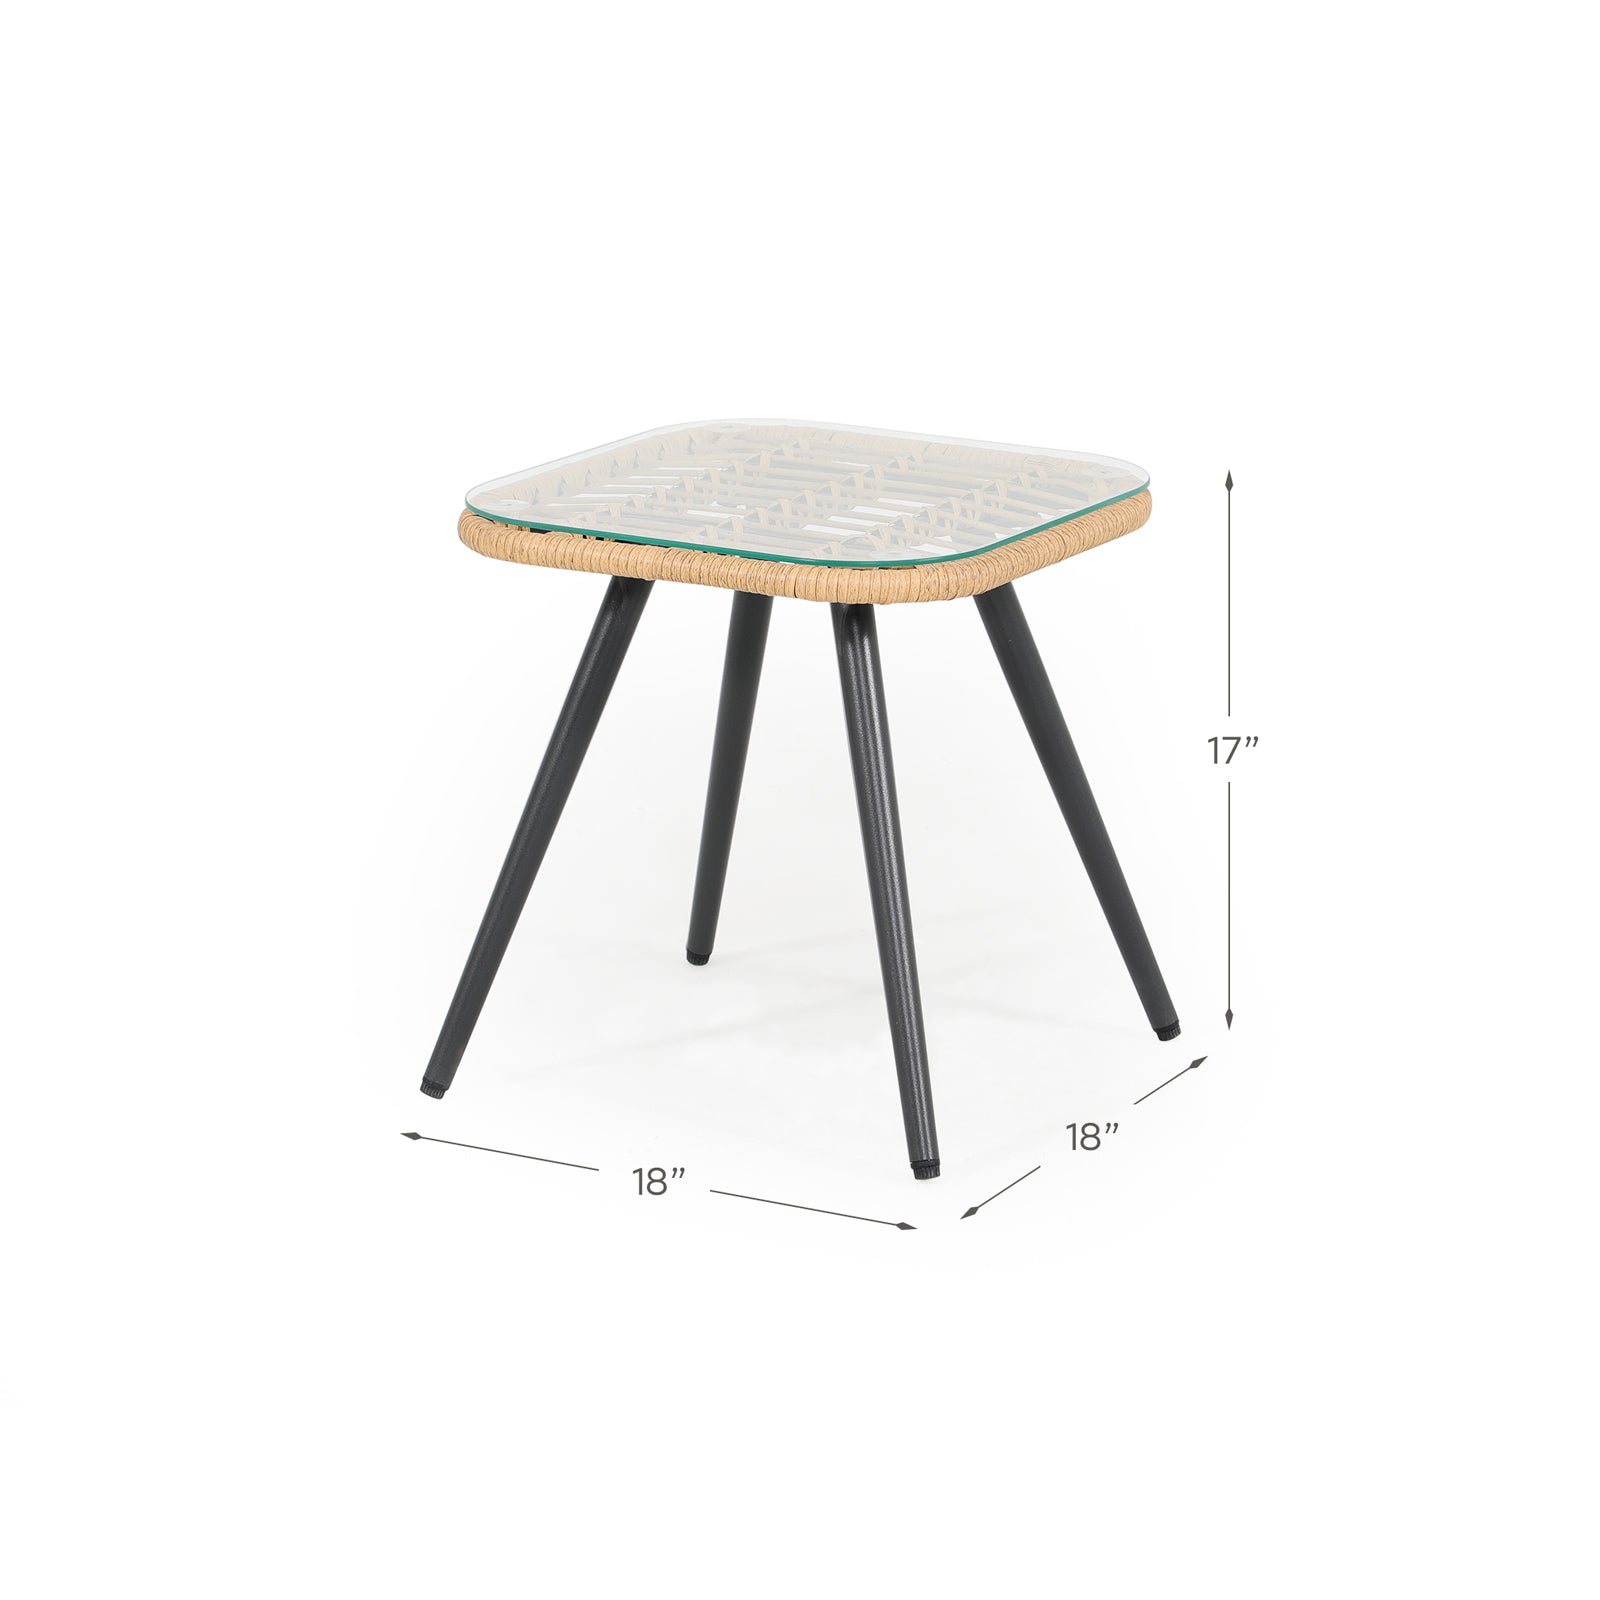 Oia Natural Wicker Bistro Square Table, dimension info - Jardina Furniture